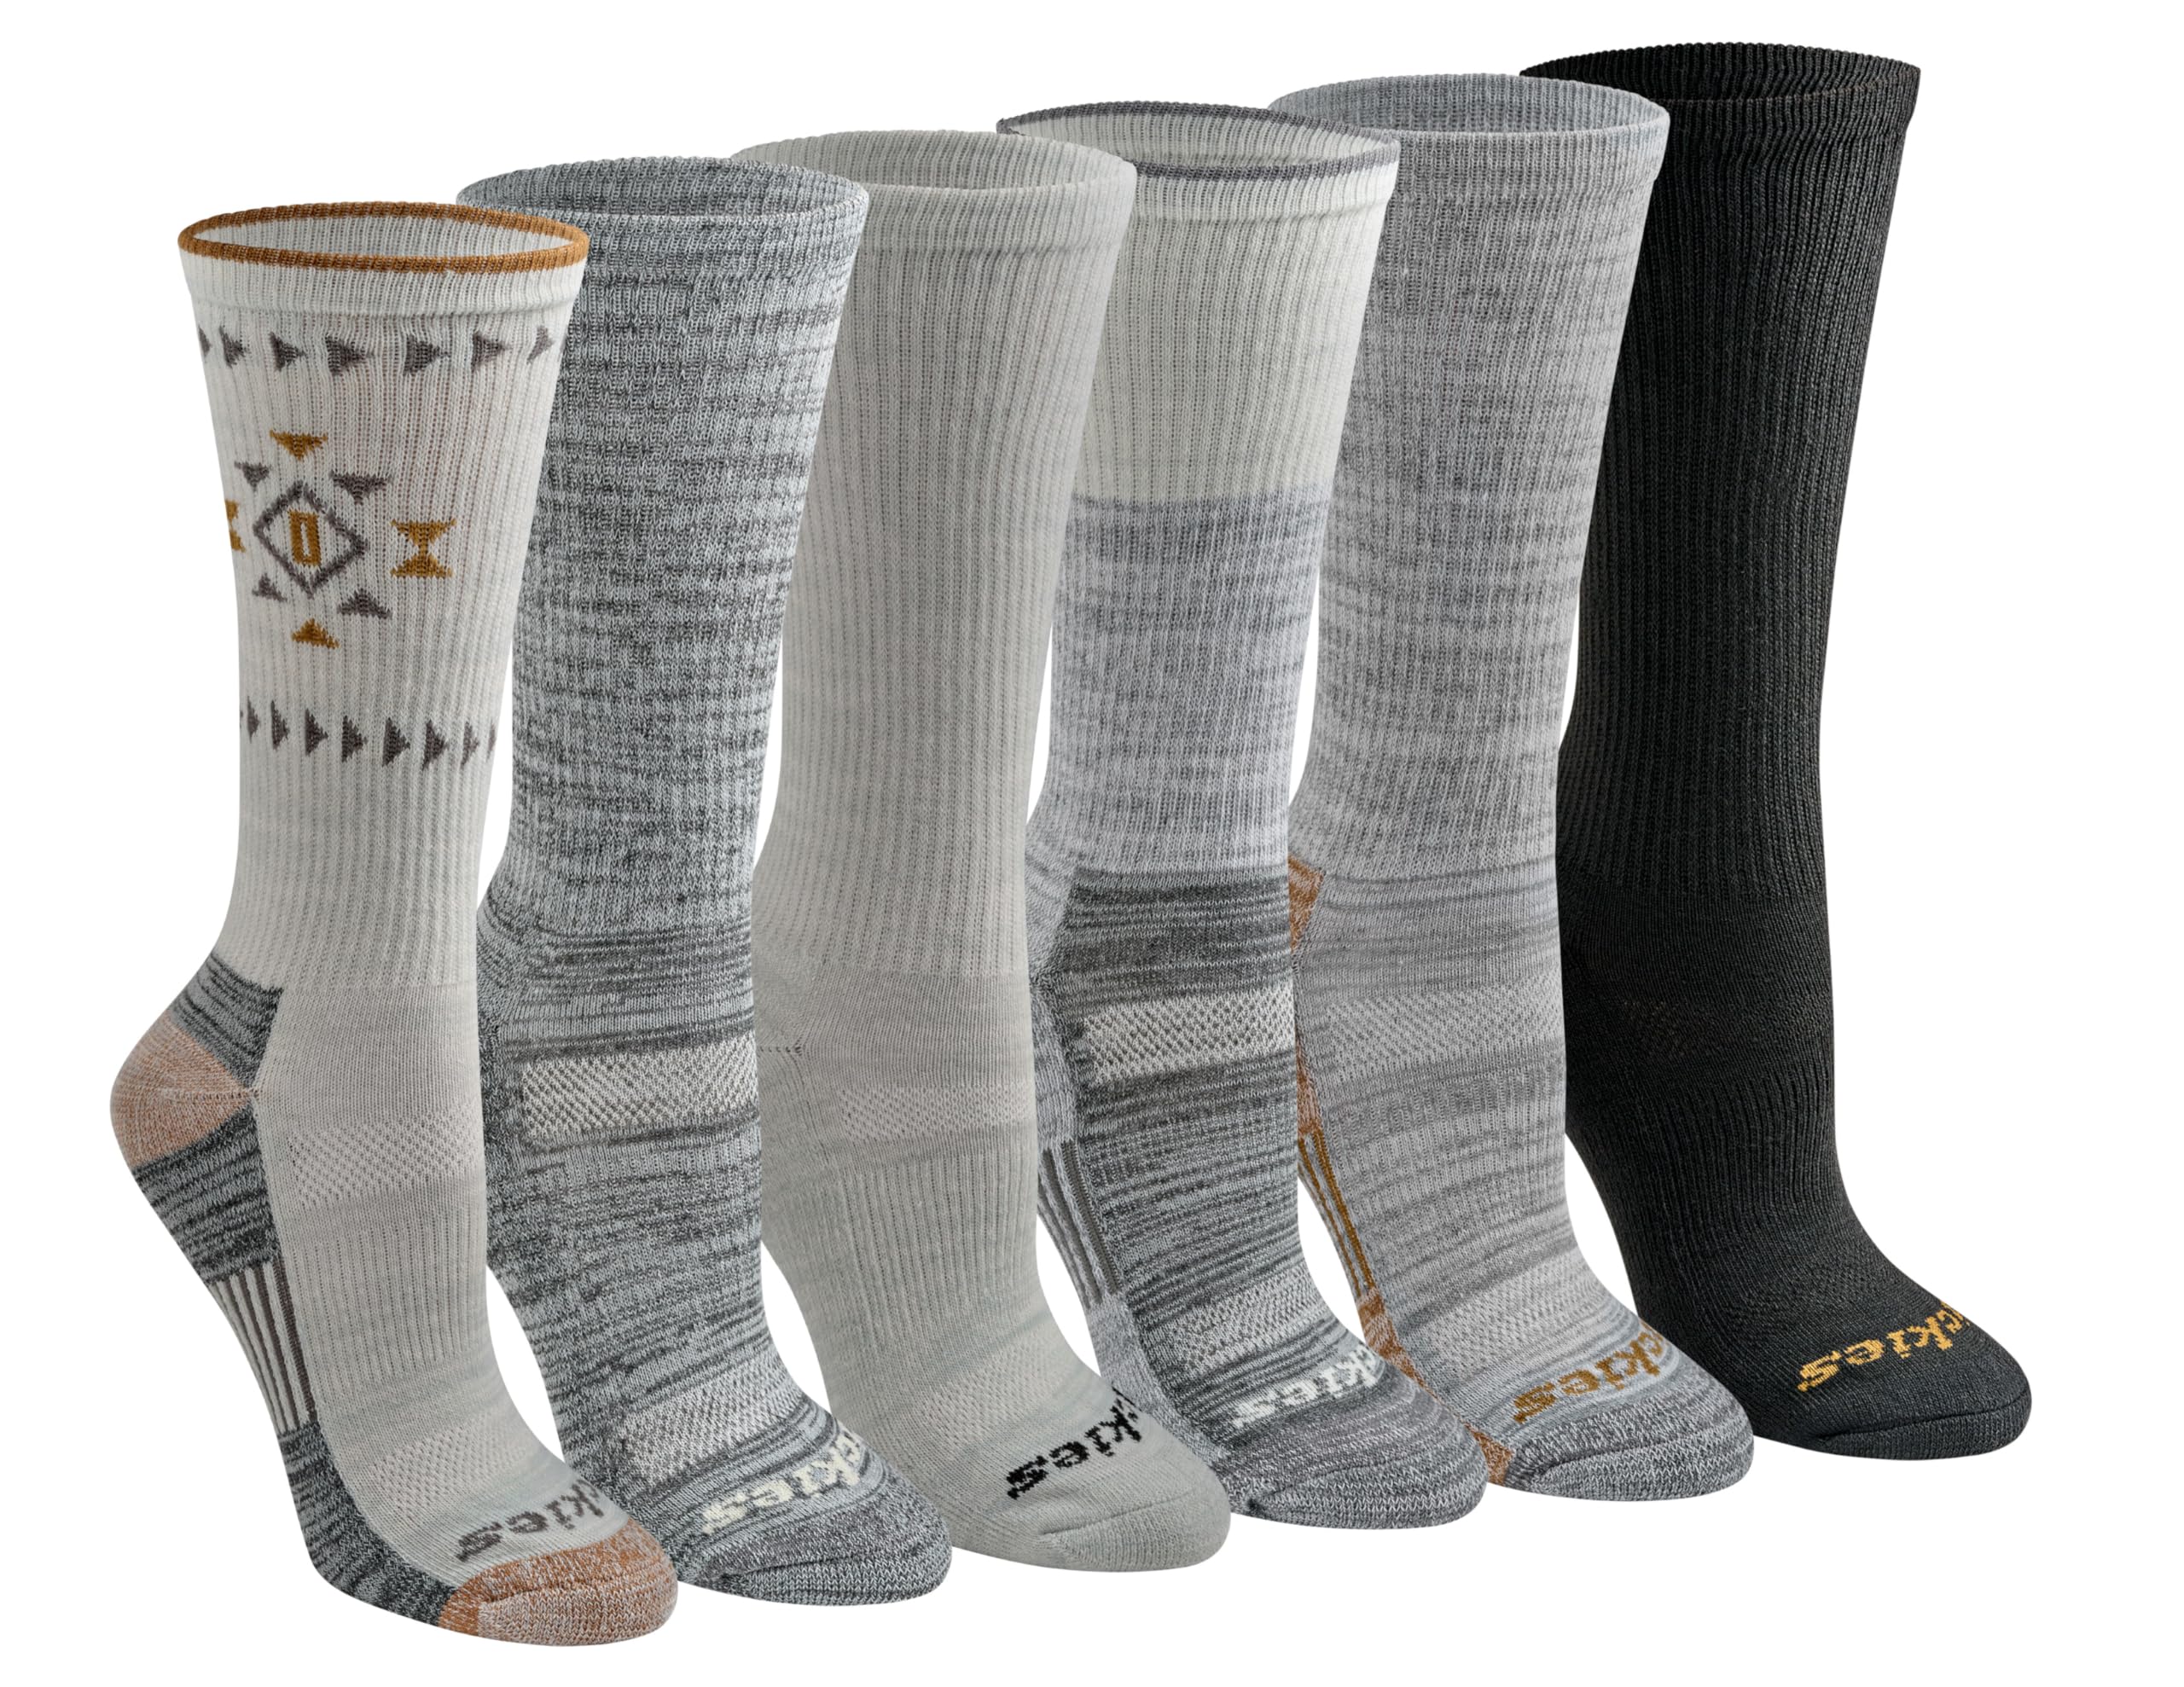 Dickies Women's Dri-tech Moisture Control Crew Socks Multipack, Grey Tribal (6 Pairs), Medium